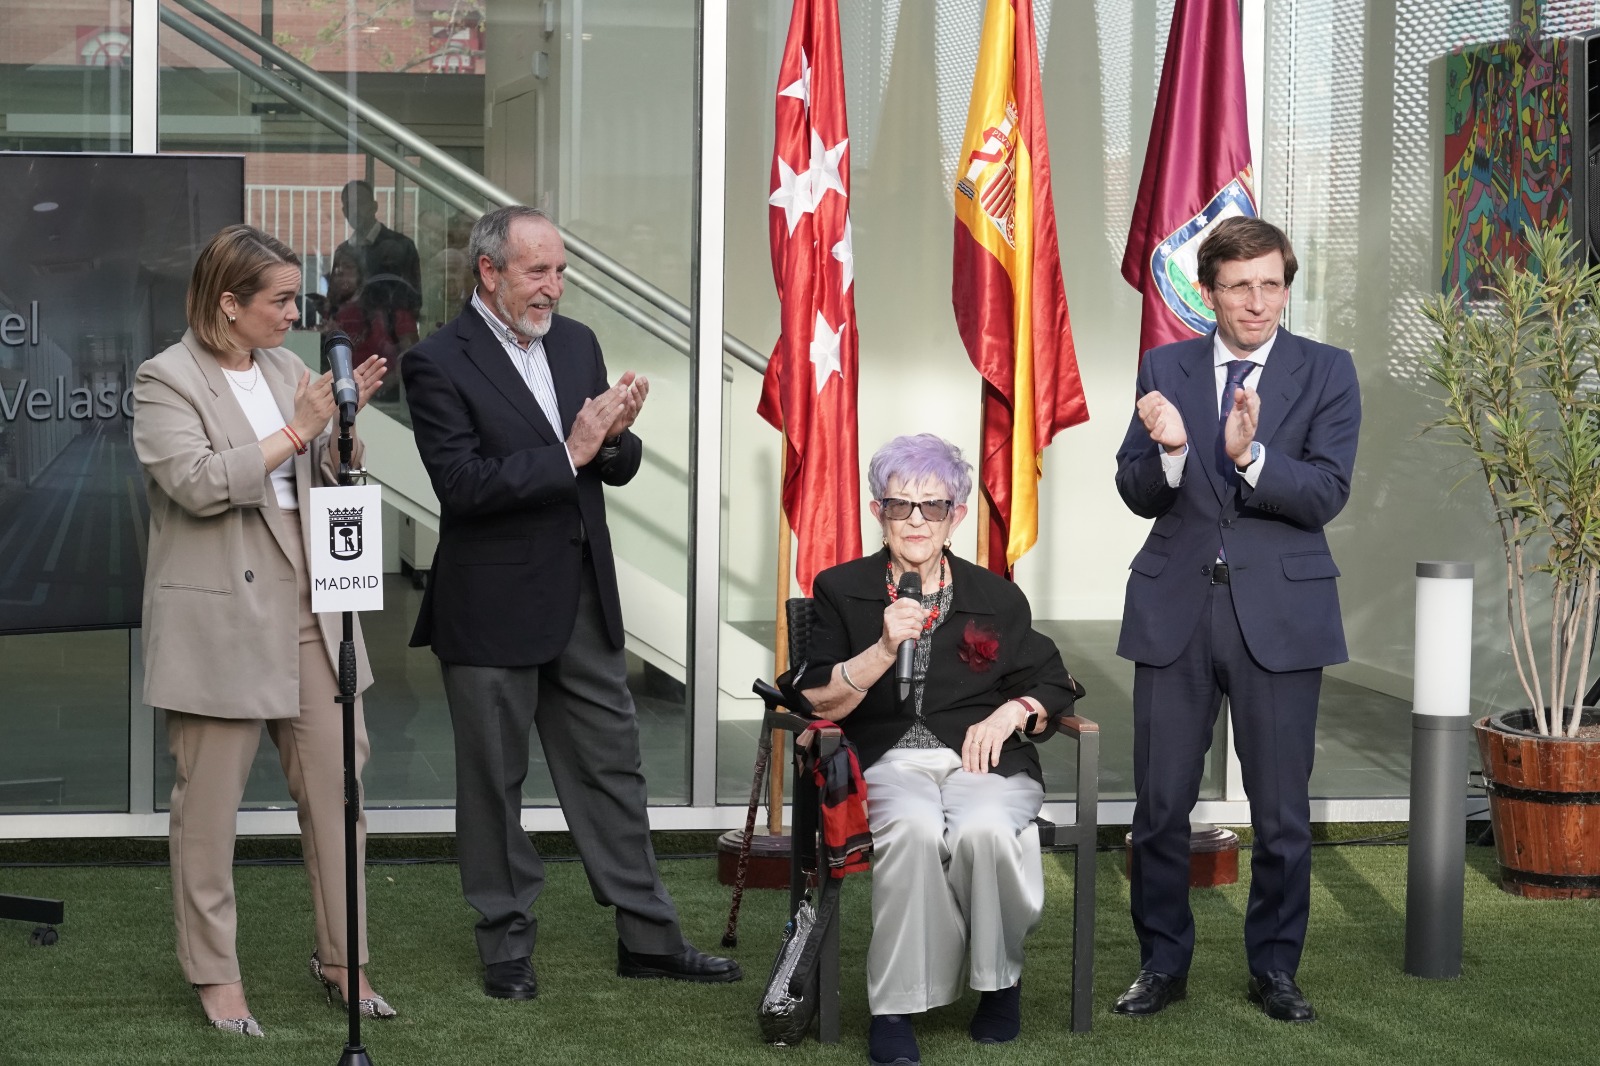 El alcalde de Madrid, Jose Luis Martínez-Almeida, acompañado por la concejala de Usera, Loreto Sordo, el ex alcalde de Madrid Juan Barranco y la viuda de Pipo Velasco, doña Eulalia García Sánchez